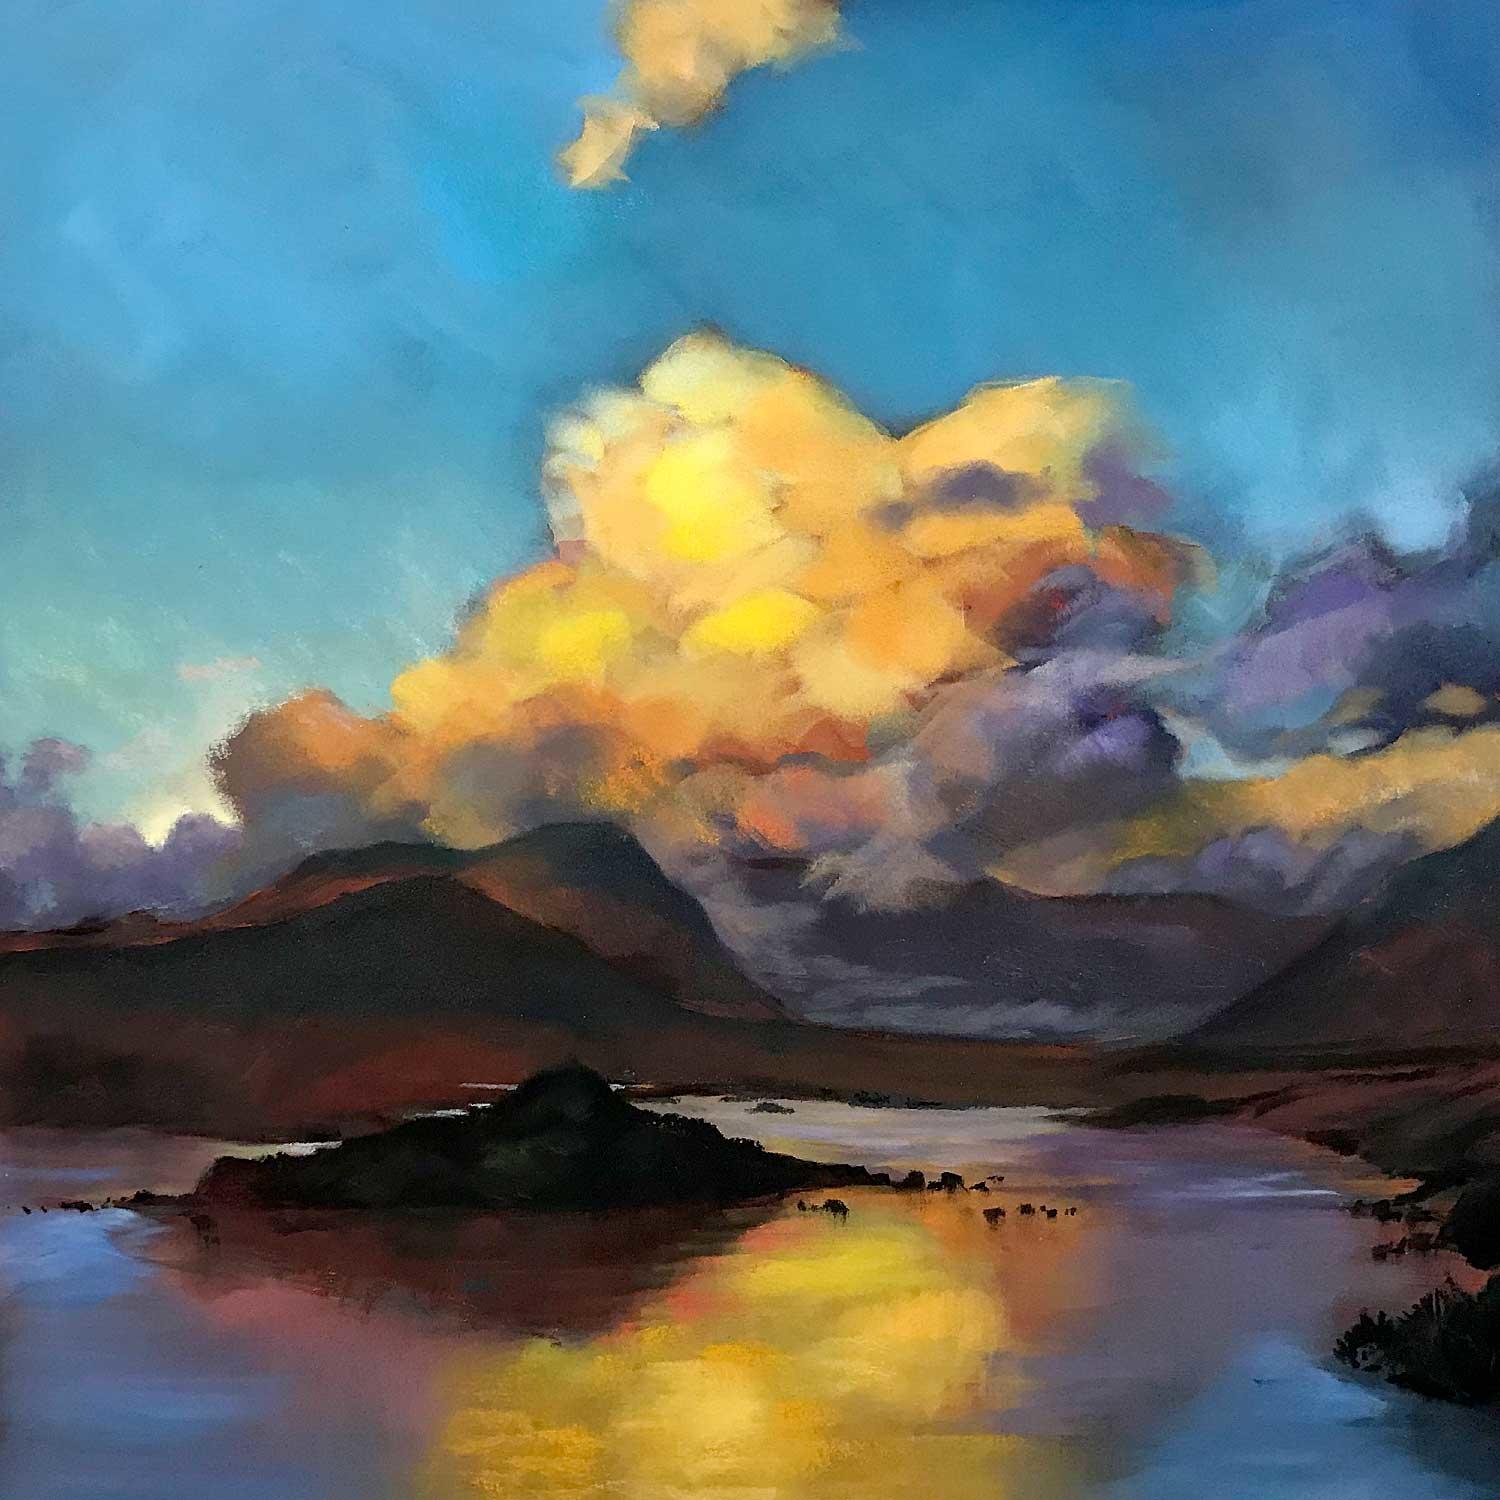 Gold Light, Loch Tulla  by Margaret Evans